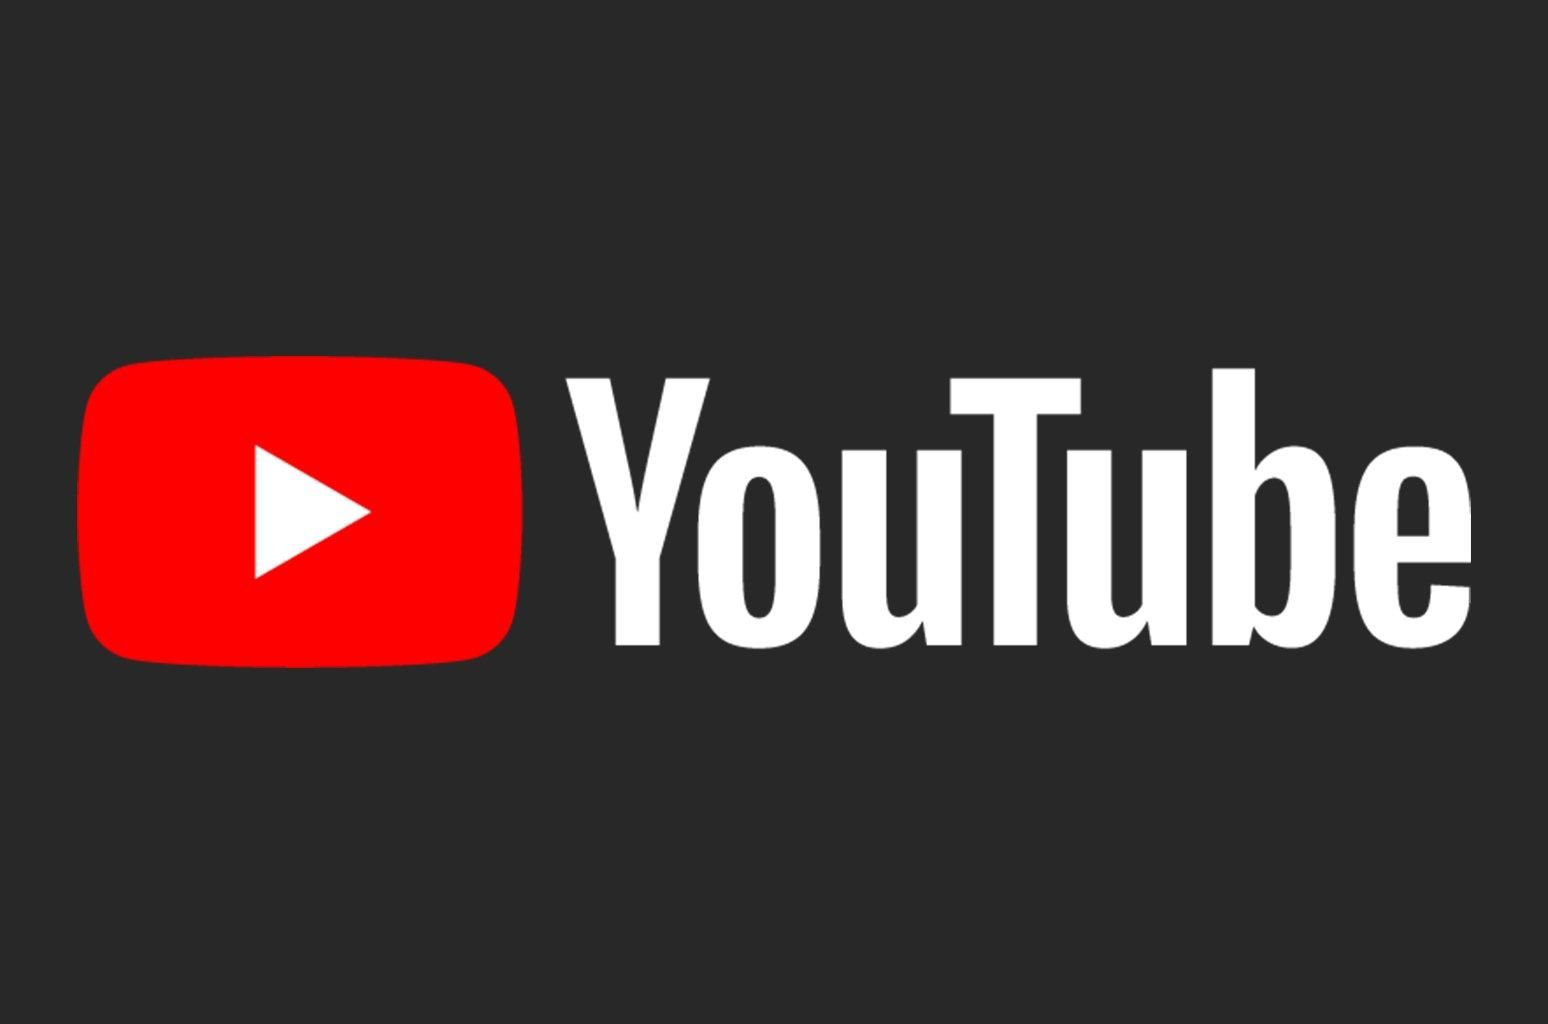 Стандарти відео YouTube (Ютуб) – нові правила користування